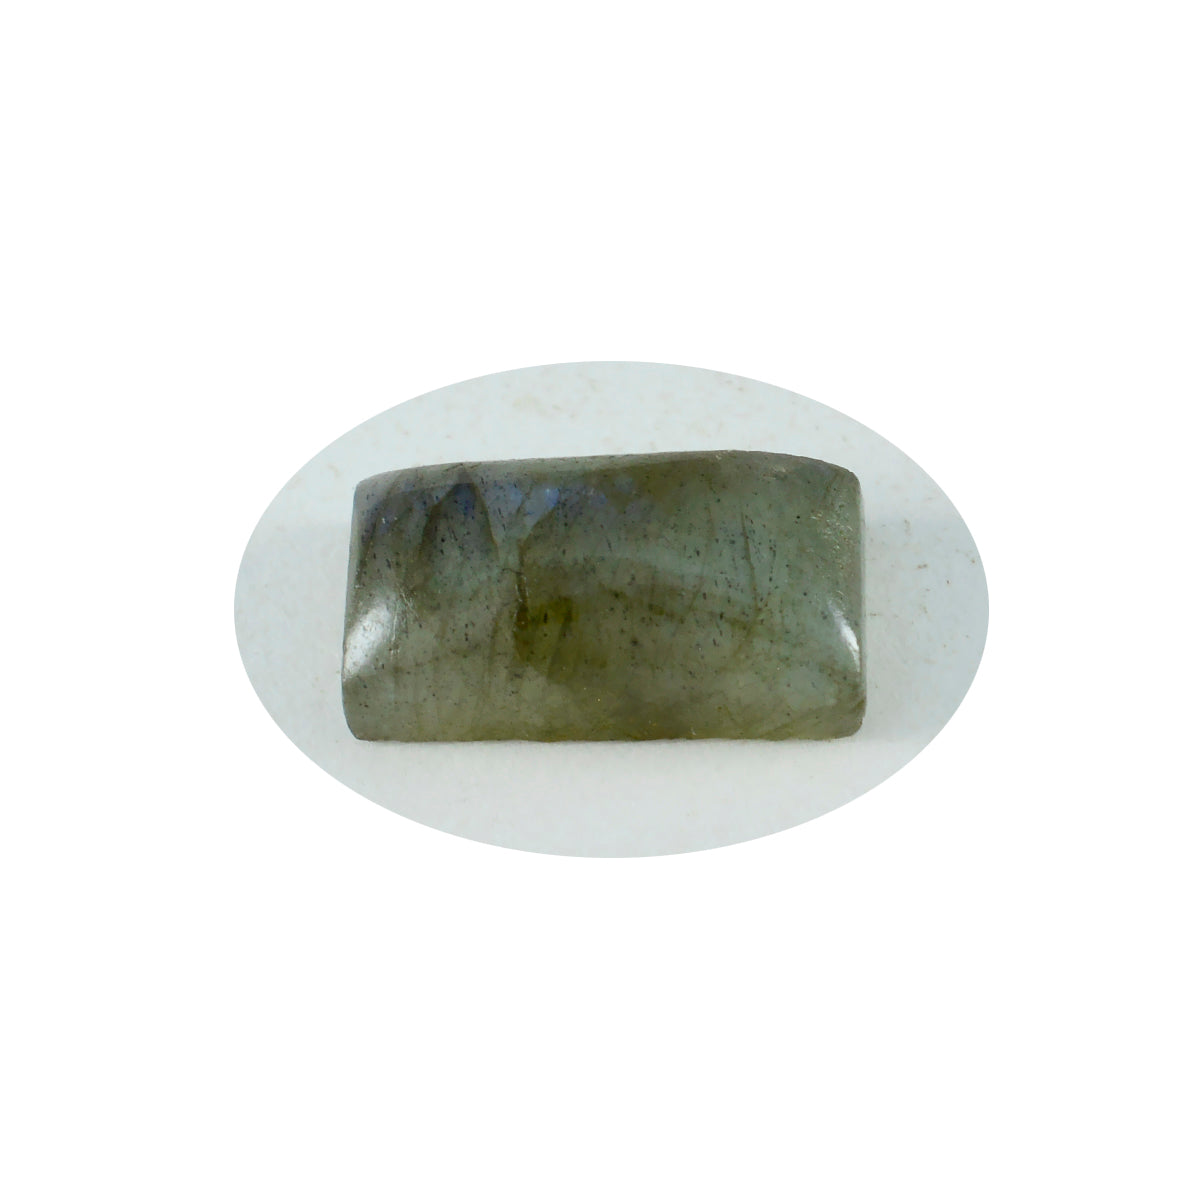 riyogems 1 шт. серый лабрадор кабошон 6x12 мм в форме багета прекрасного качества, свободные драгоценные камни